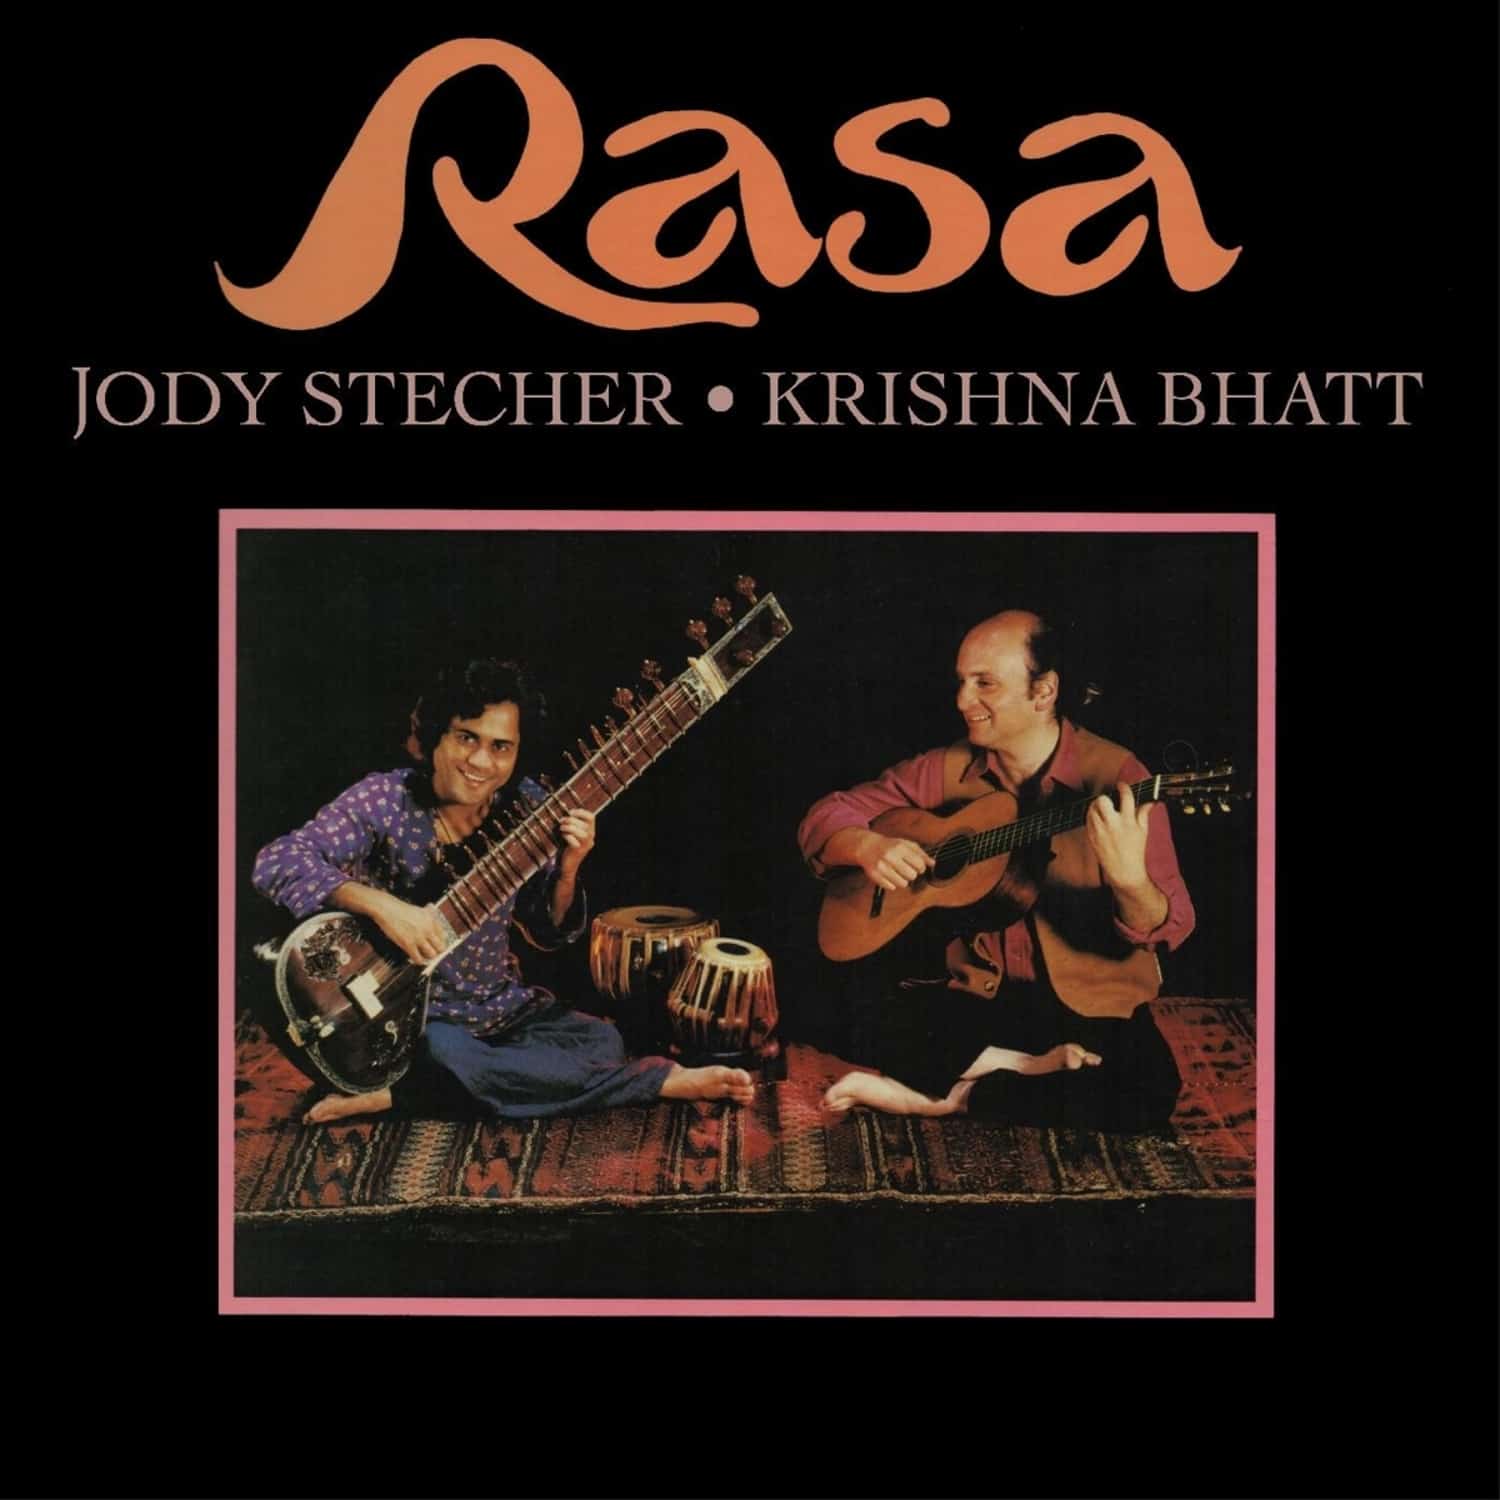  Jody Stecher & Krishna Bhatt - RASA 